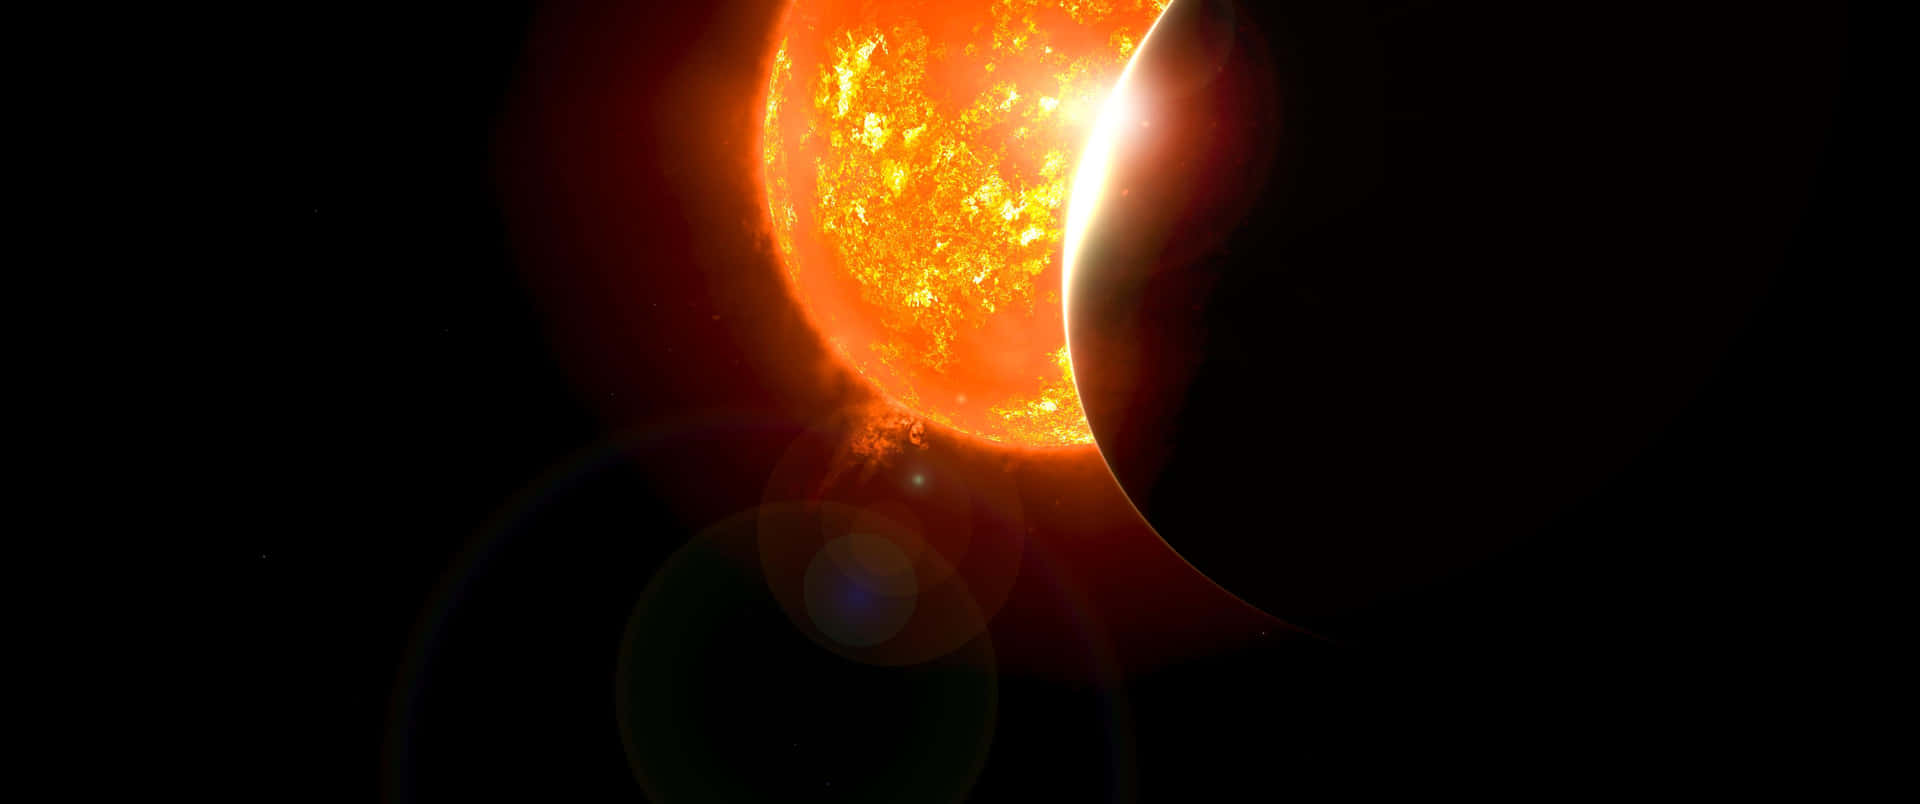 3440x1440espacio Con El Sol Durante Un Eclipse. Fondo de pantalla